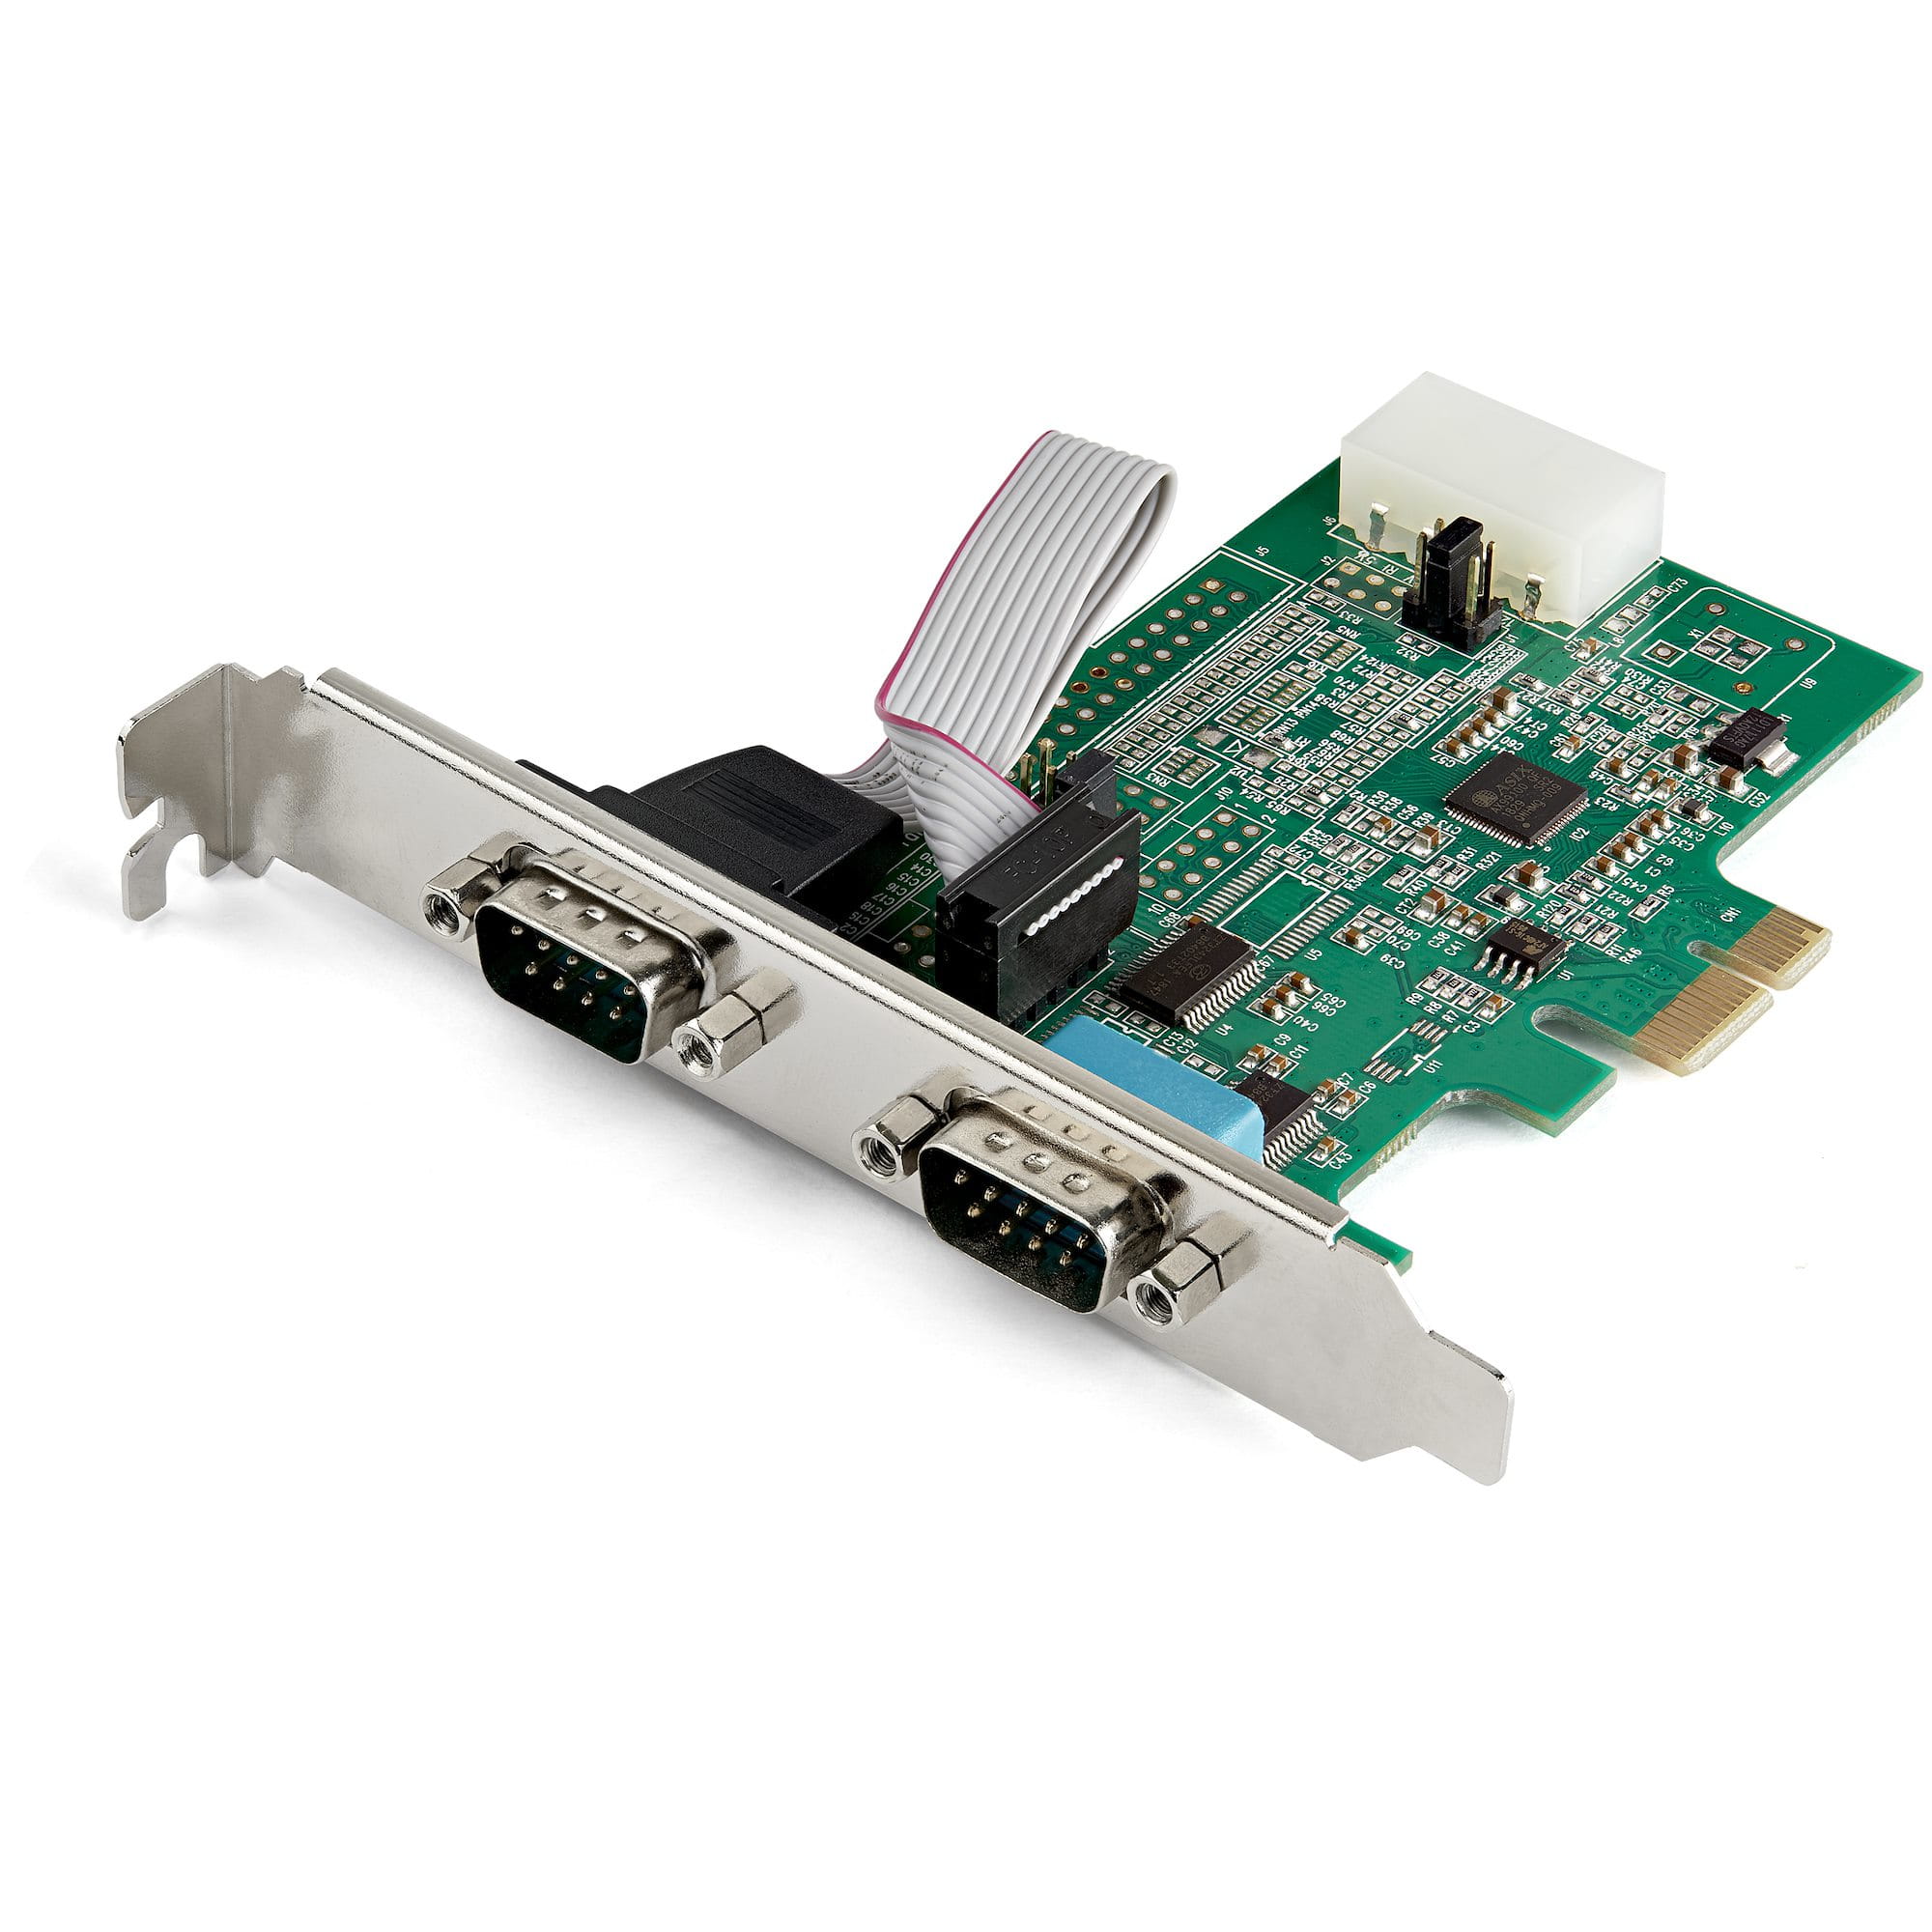 StarTech.com 2 Port Serielle PCI Express RS232 Adapter Karte - Serielle PCIe RS232 Kontroller Karte - PCIe zu Dual Serielle DB9 - 16950 UART - Erweiterungskarte - Windows & Linux (PEX2S953)